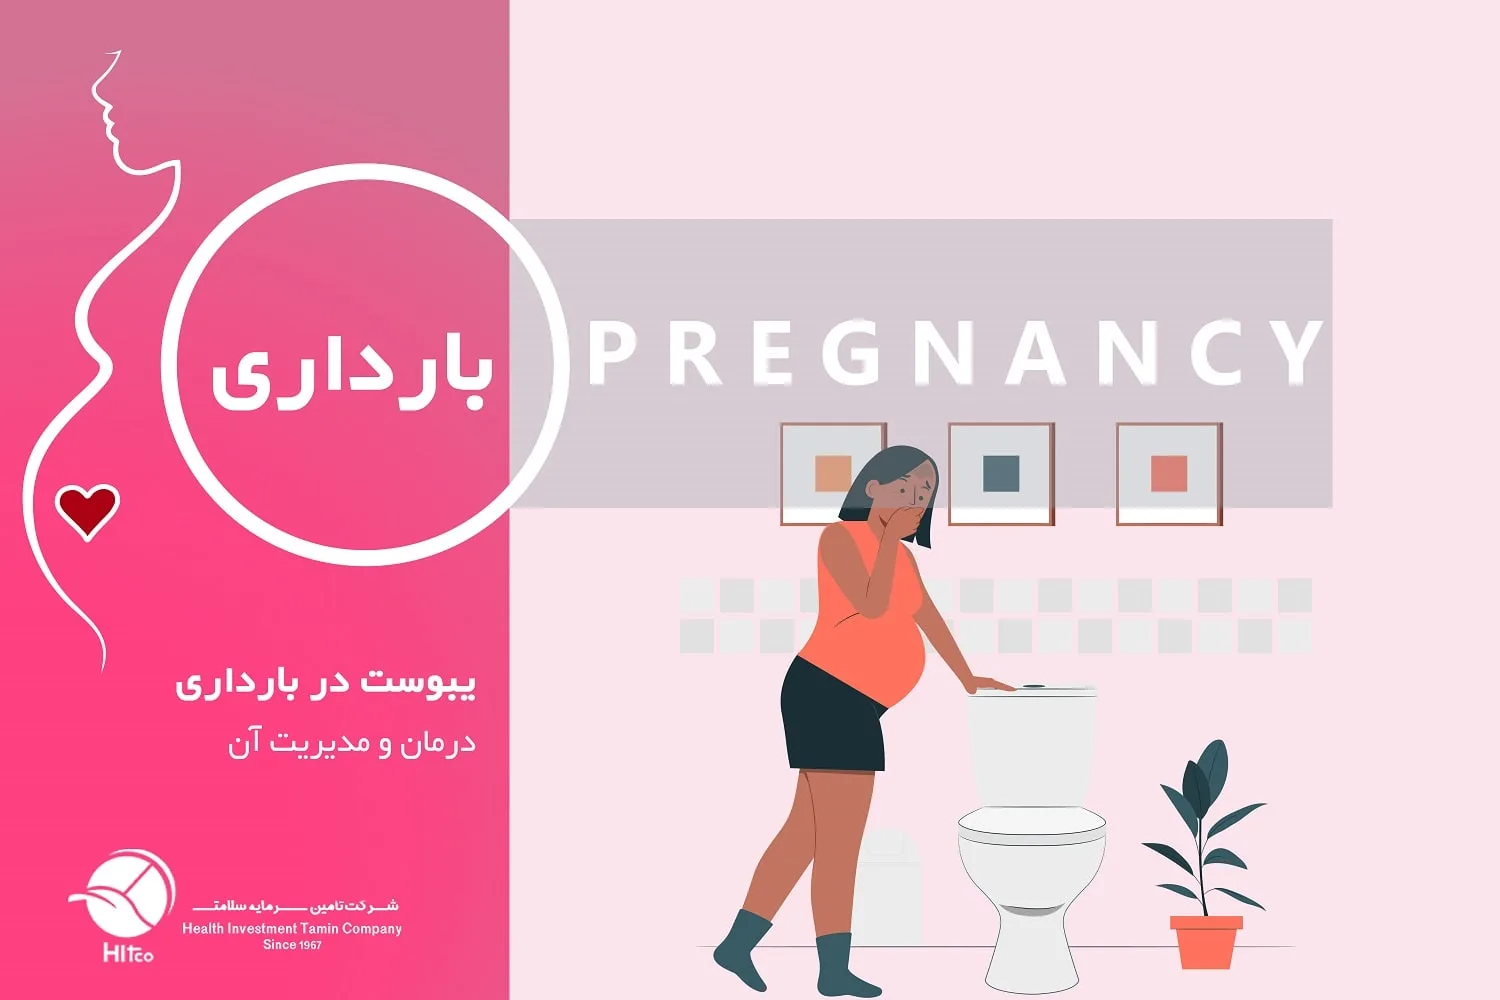 یبوست در بارداری